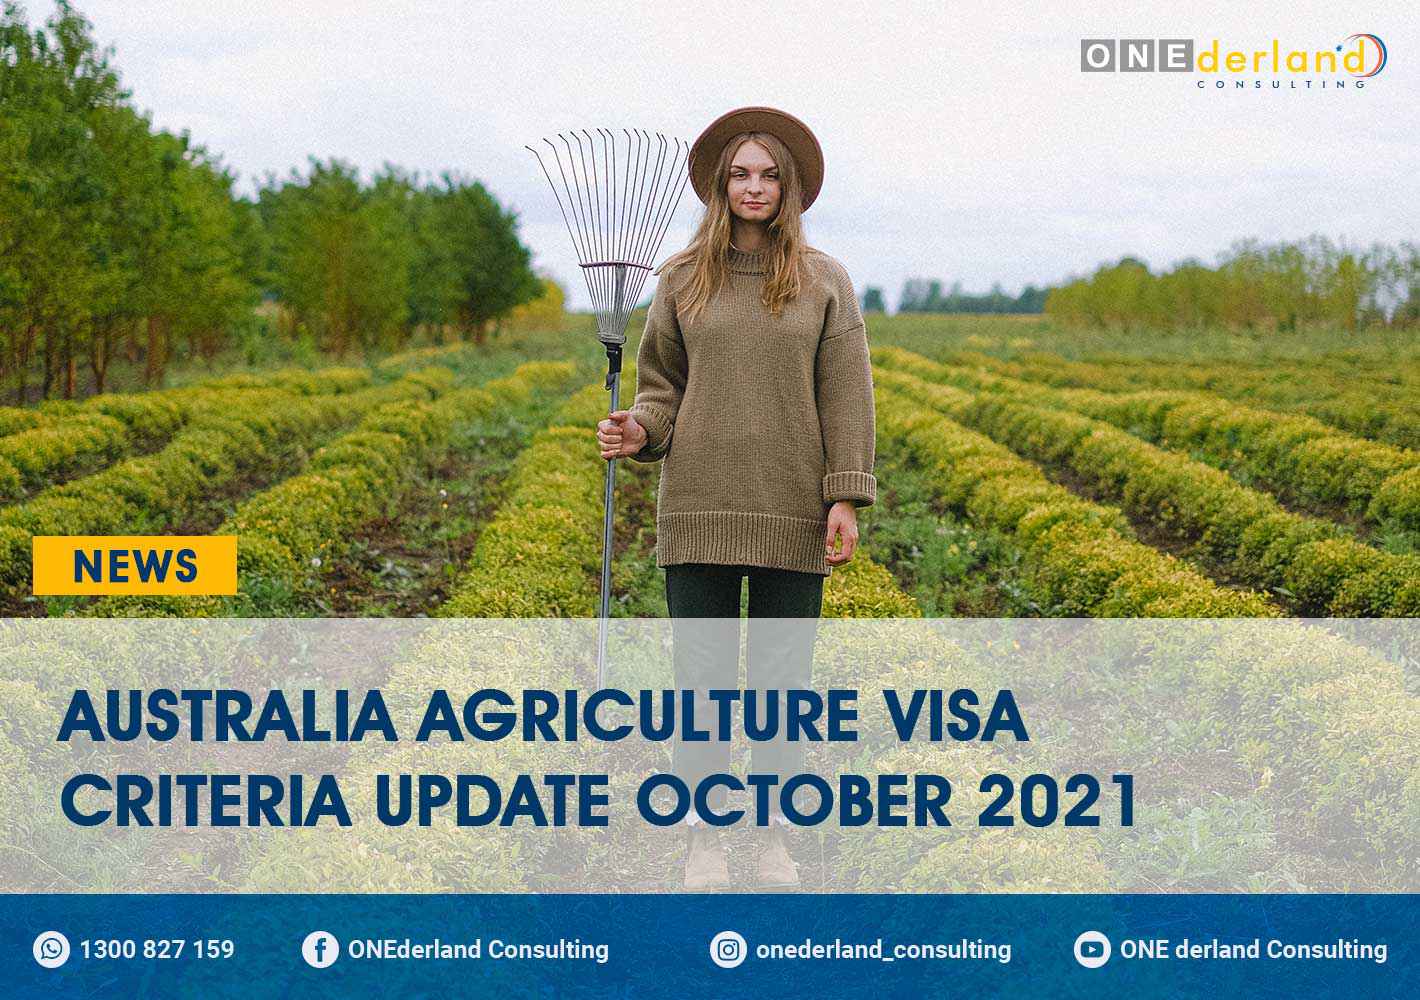 Australia Agriculture Visa Criteria Update October 2021